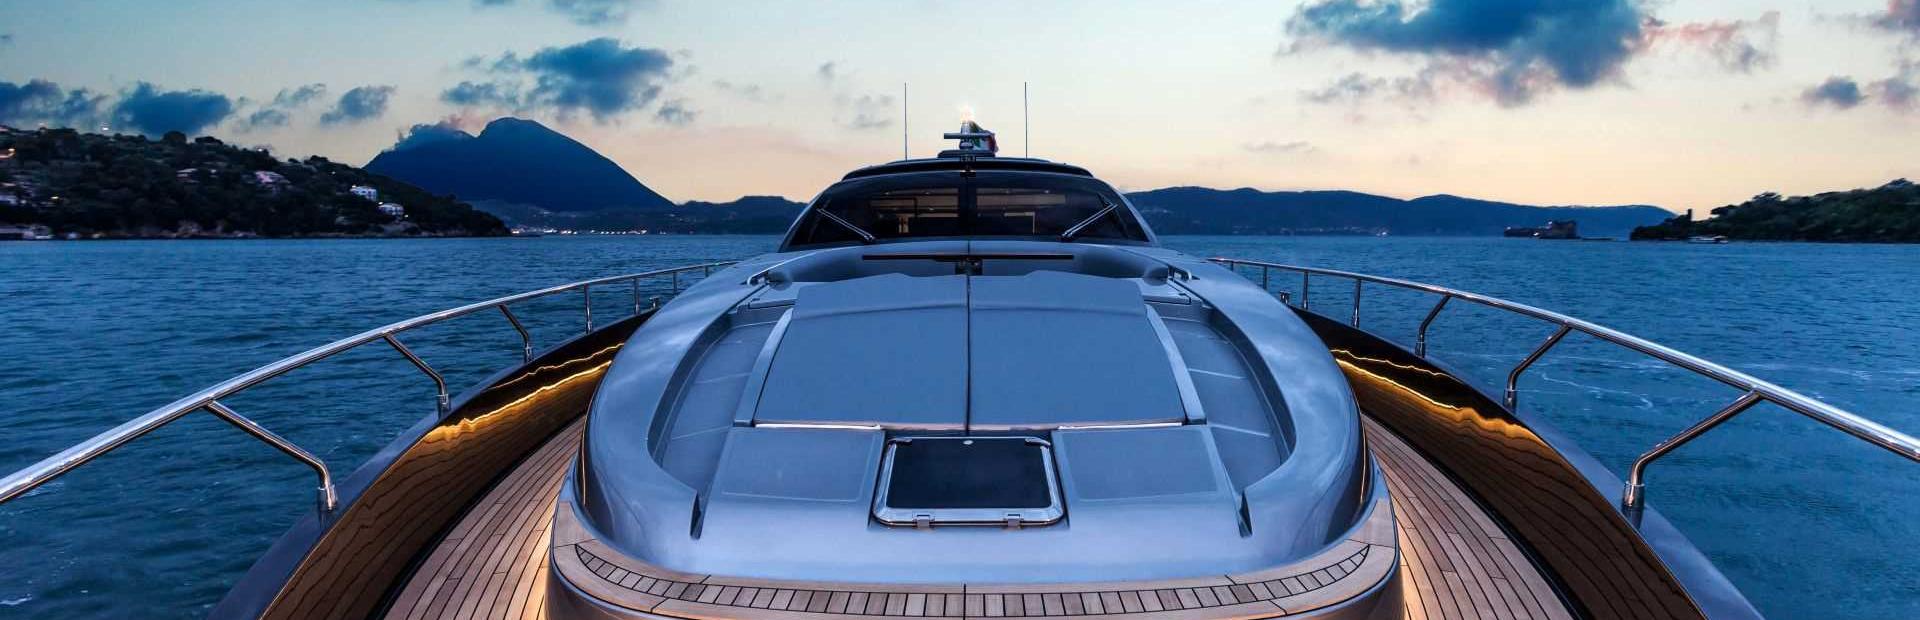 88' Domino Super Yacht